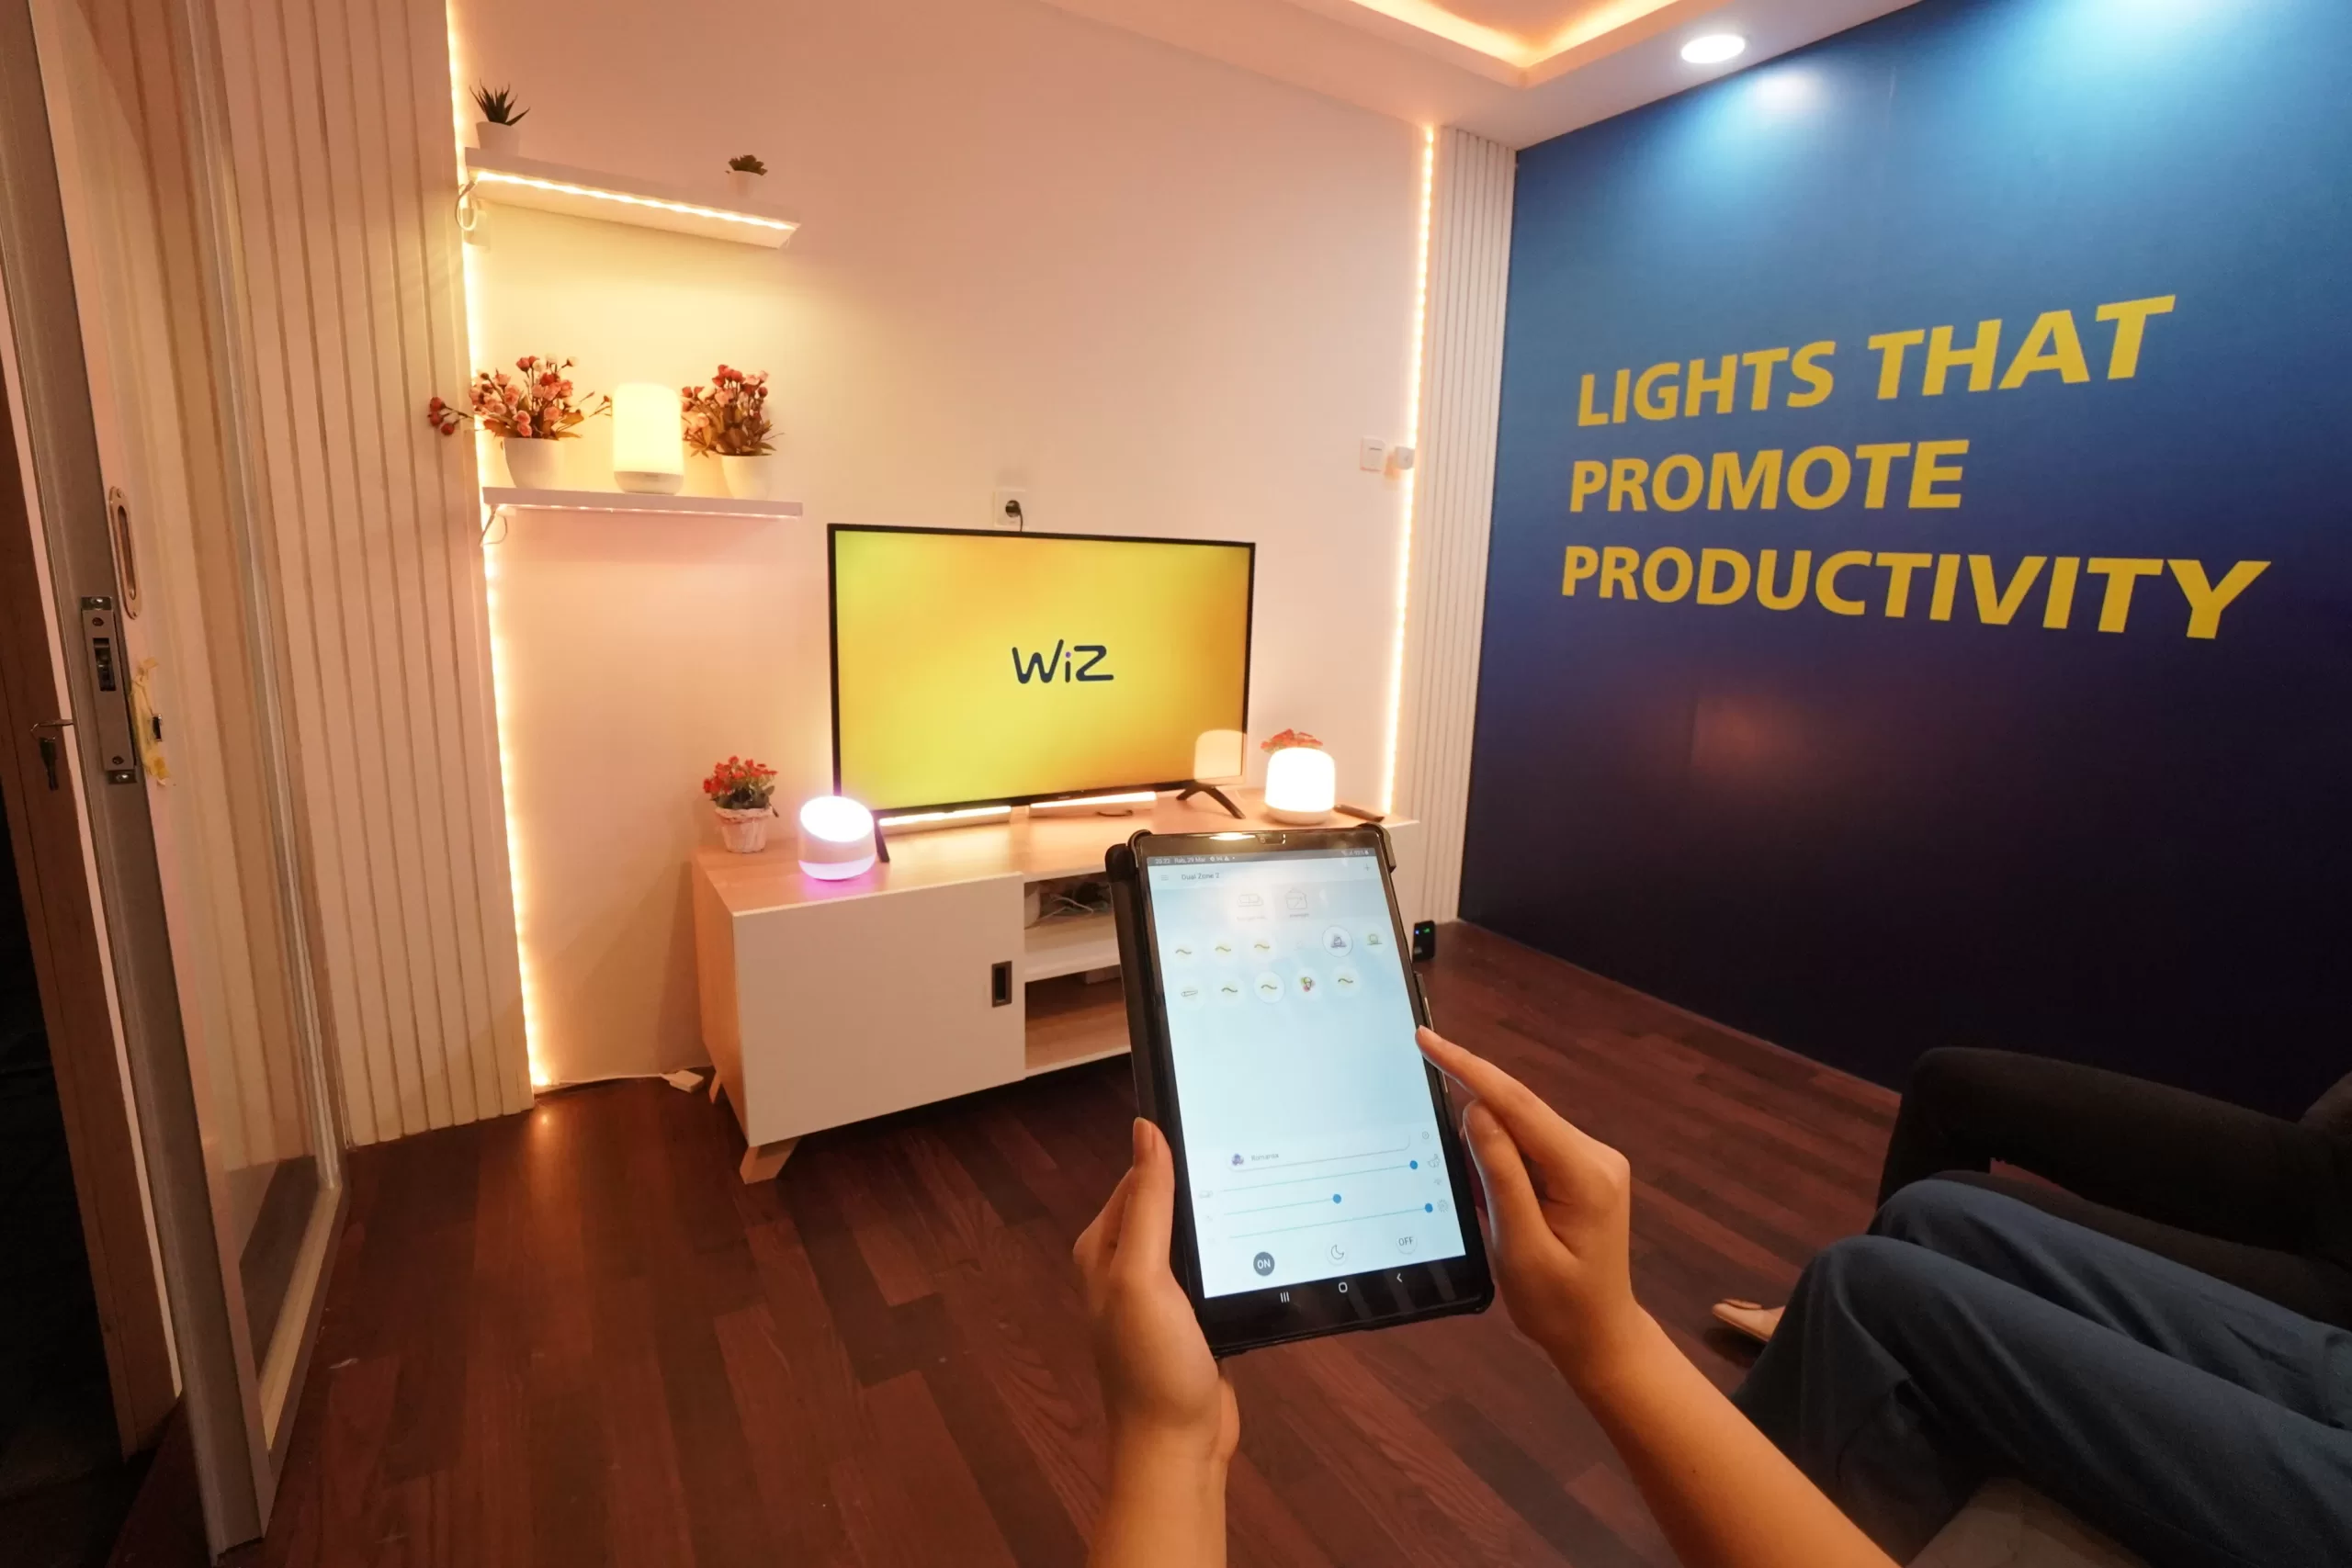 Kemudahan kontrol pencahayaan Philips smart LED dengan aplikasi WiZ untuk menikmati berbagai ambience pencahayaan hingga 16 juta warna yang sesuai kebutuhan, mood, dan aktivitas di rumah